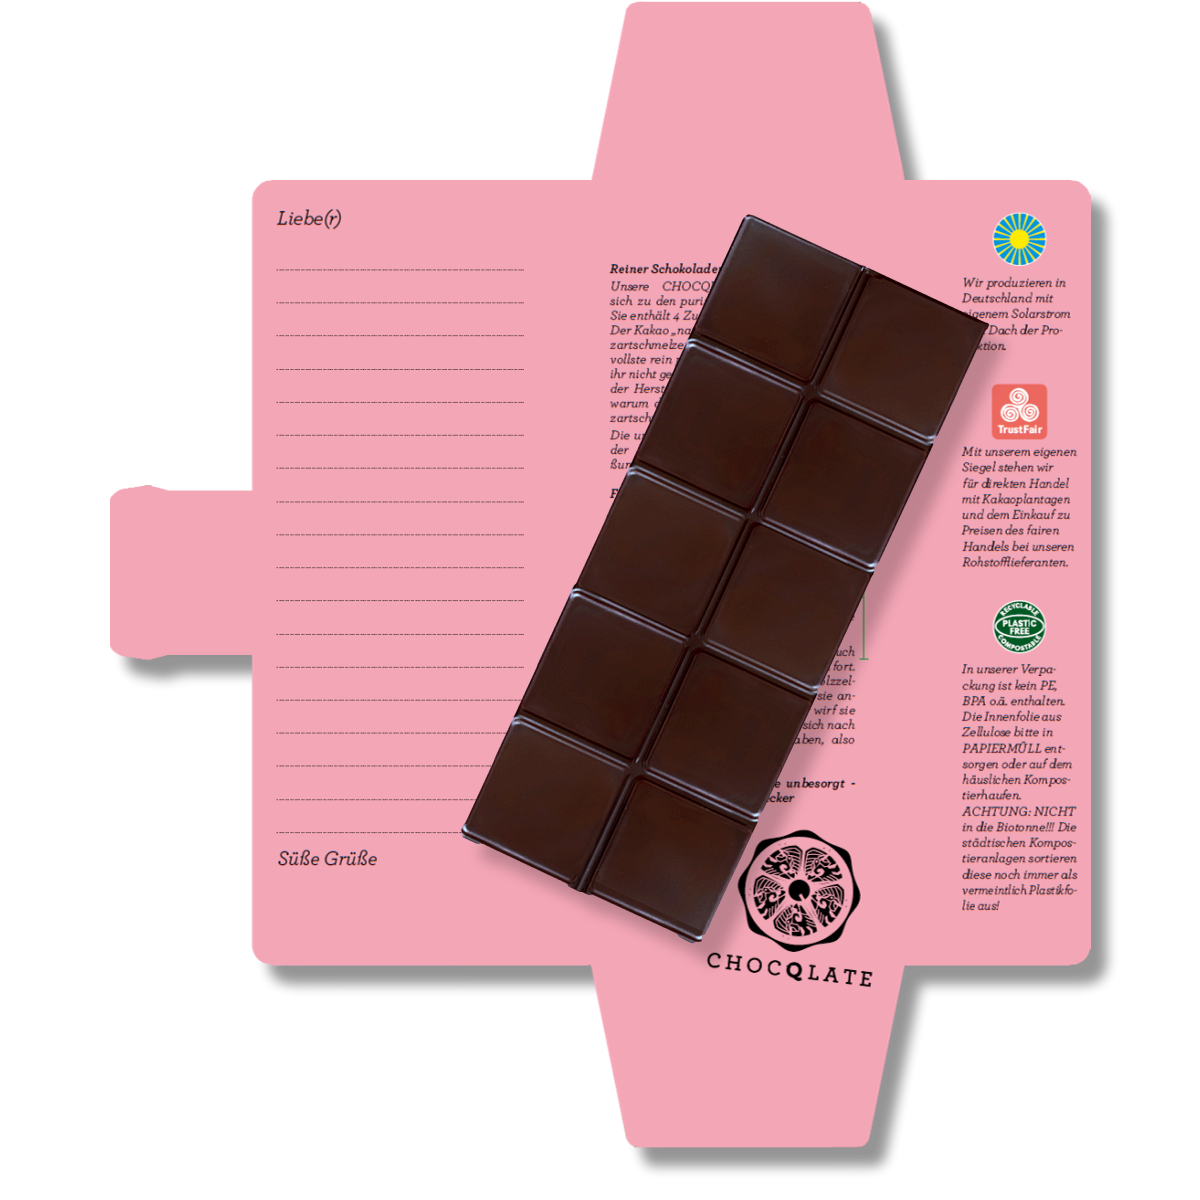 SweetGreets Bio-Schokolade mit Grußkarte "Küss mich, dann schmelz ich"